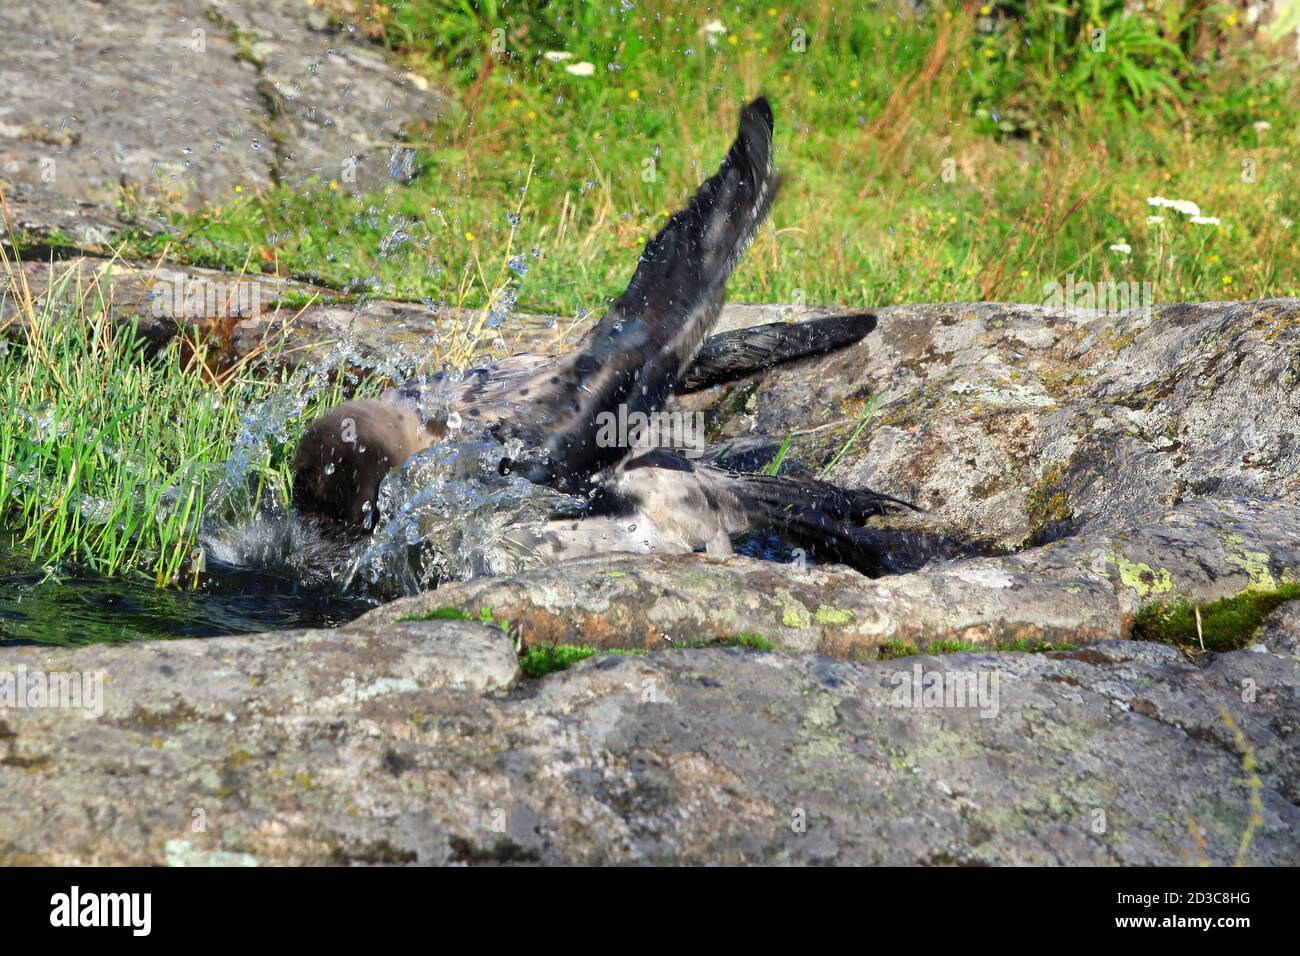 L'eau éclabousse quand jeune, ca 2,5 mois Crow à capuchon, Corvus cornix se baignent dans une flaque d'eau de pluie sur un rocher dans un environnement naturel. Banque D'Images